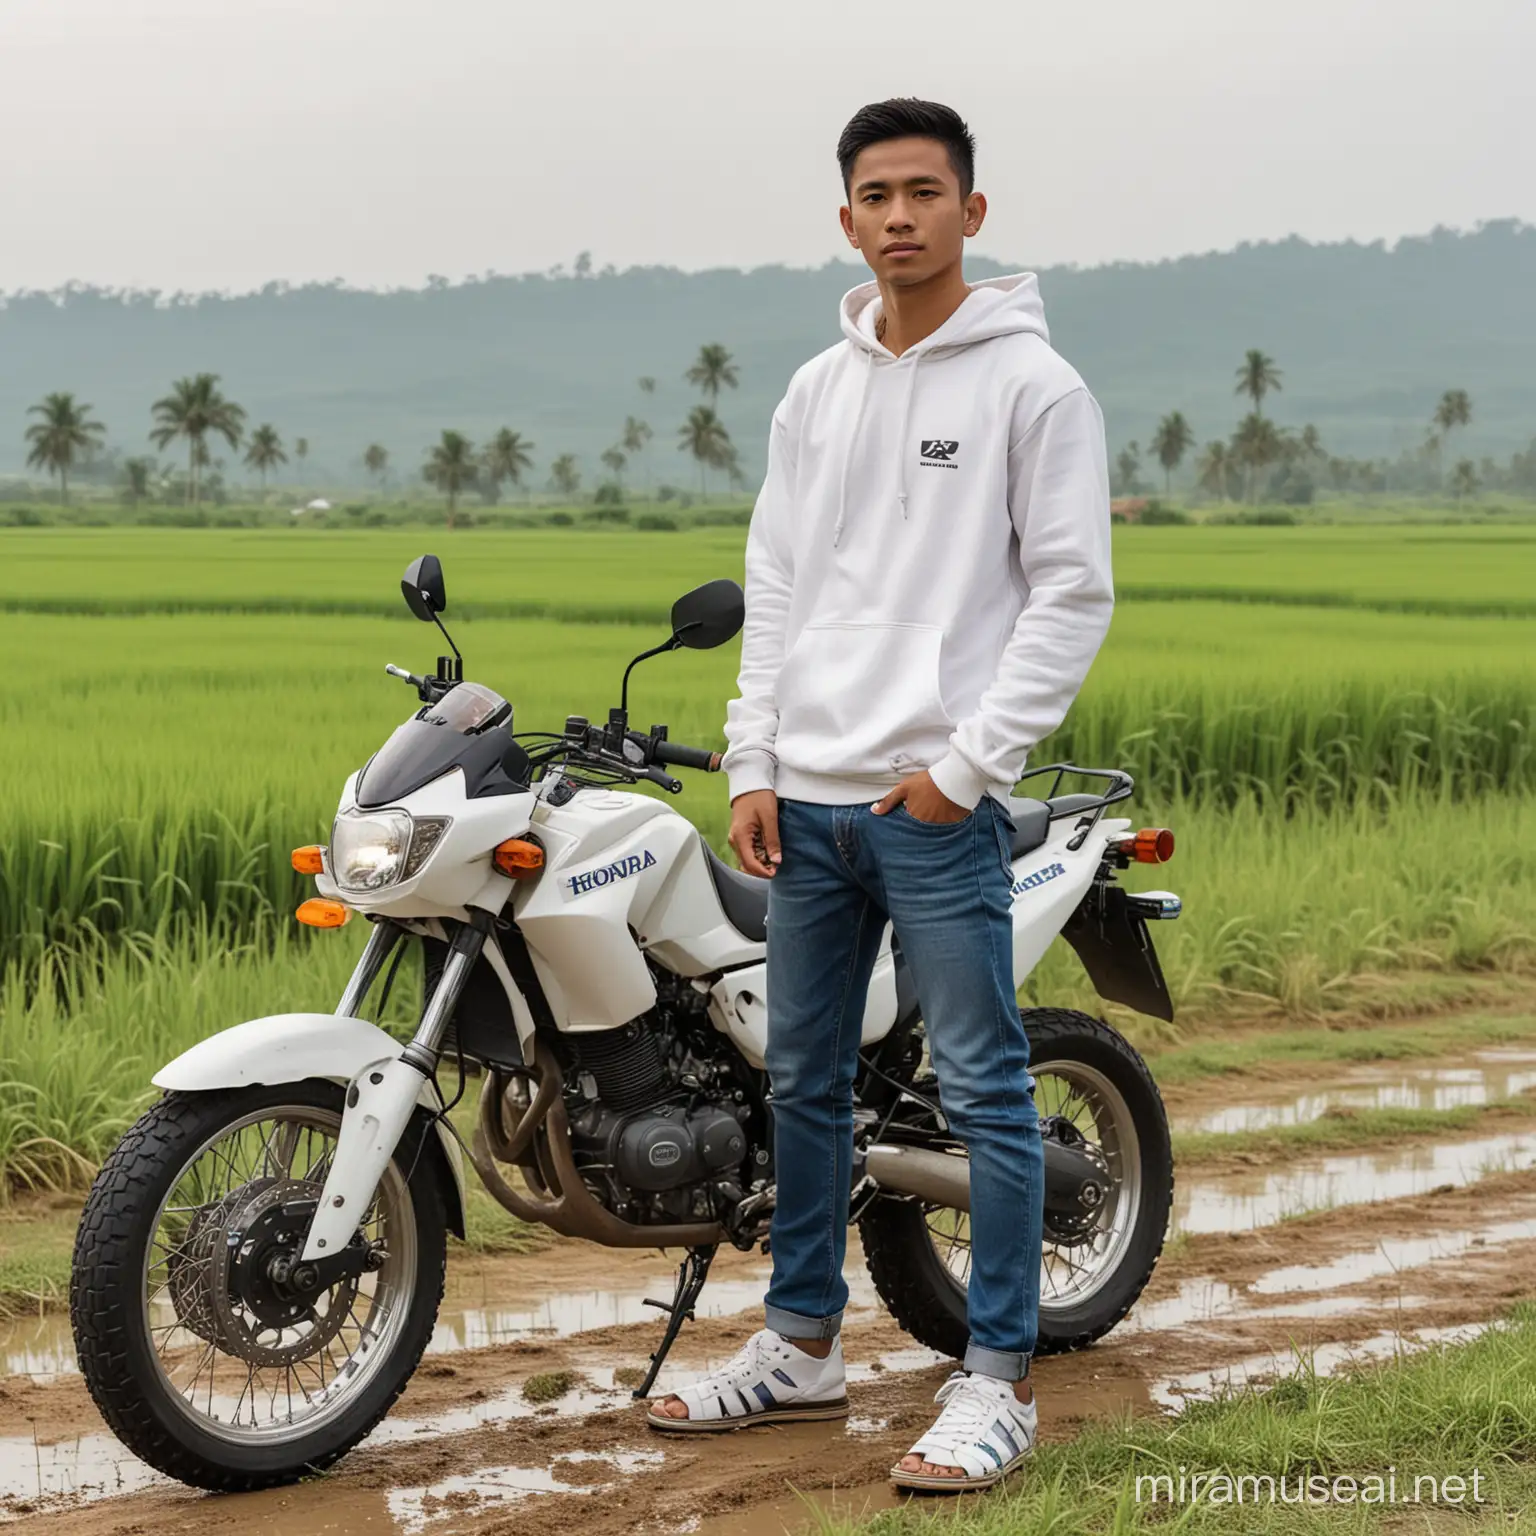 Pemuda dari Indonesia sedang bersedih memakai Hoodie warna putih celana jeans pendek dan sendal jepit berdiri di samping motor sport 'HONDA' latarbelakang jalan raya di area persawahan.